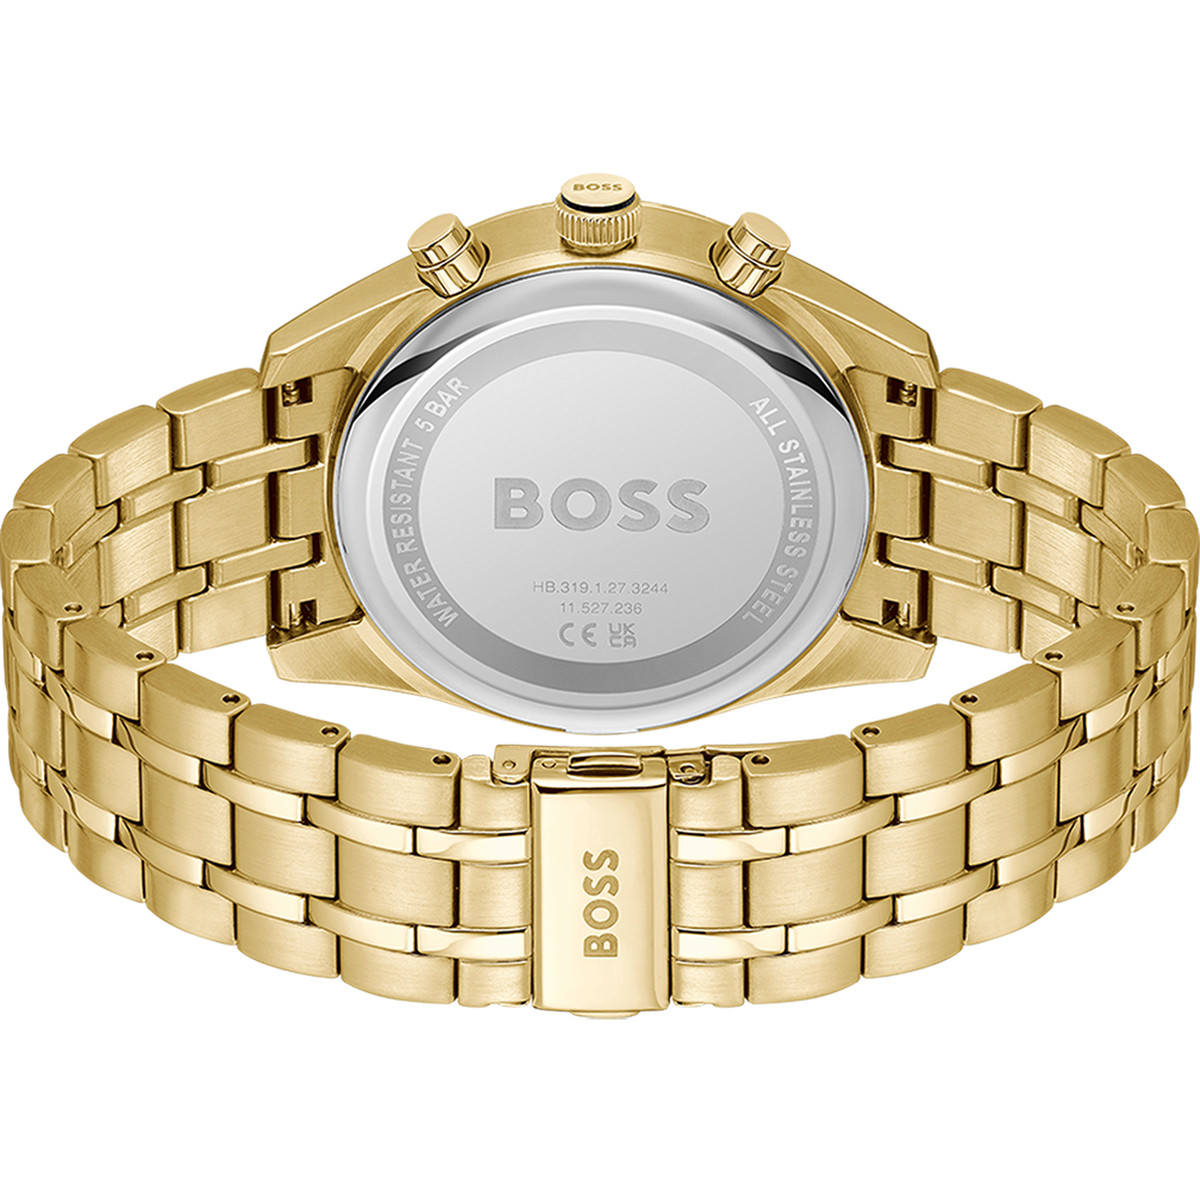 Montre BOSS sport lux homme chronographe bracelet acier inoxydable doré jaune - vue 3